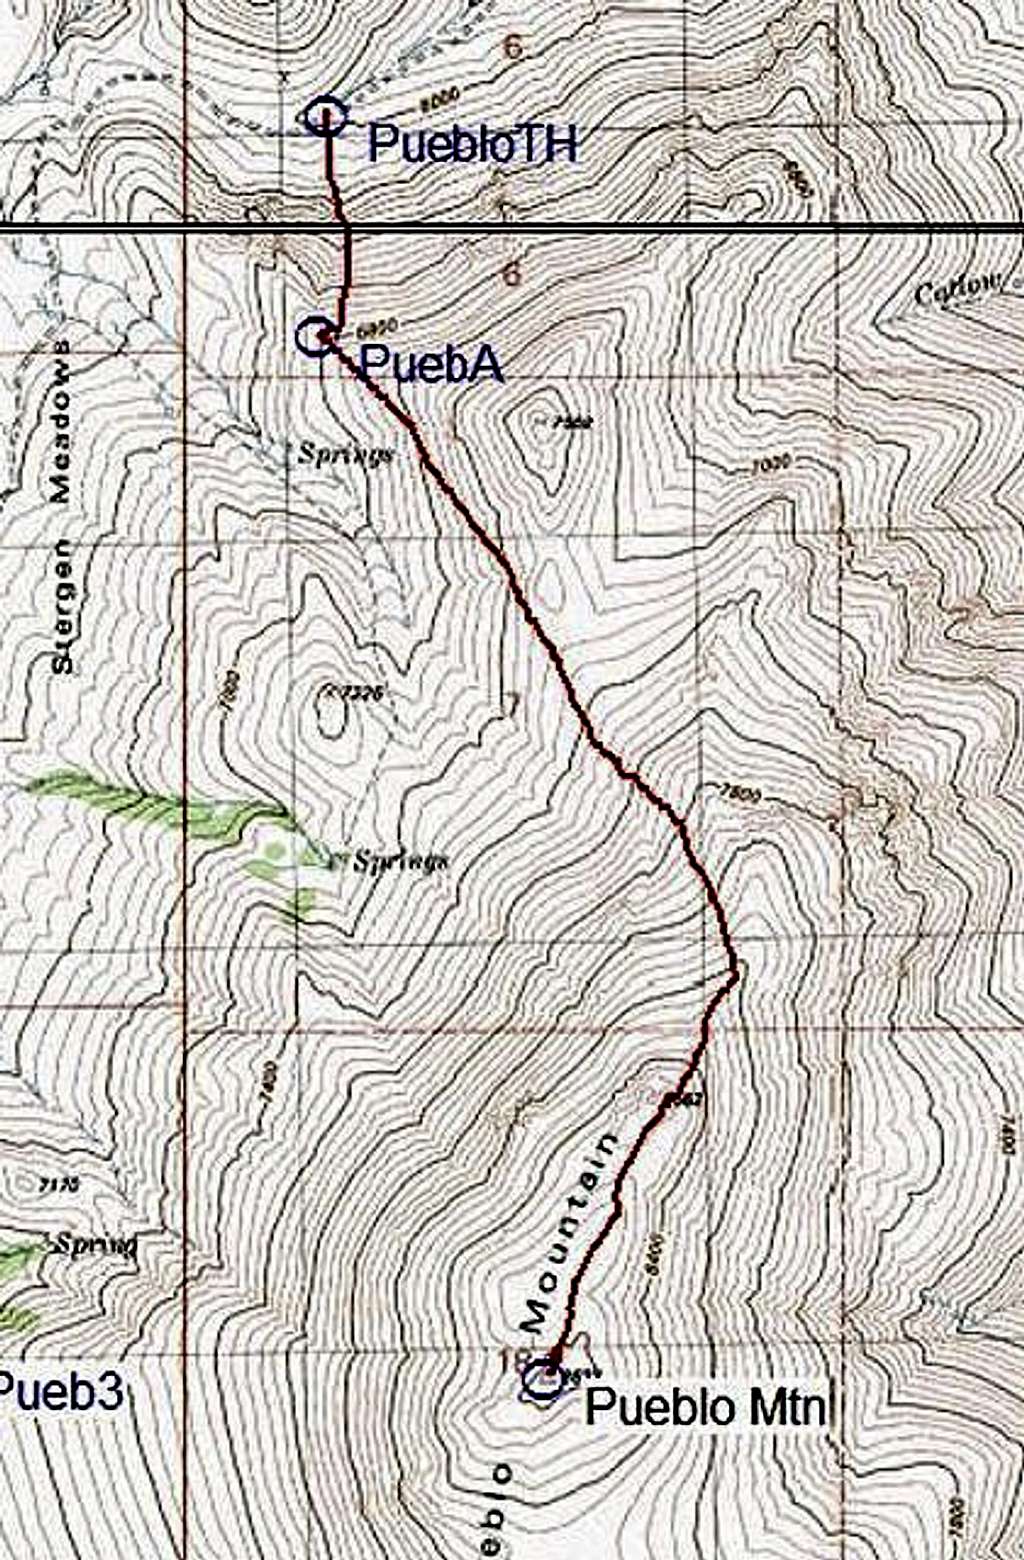 Topo of the north ridge route...